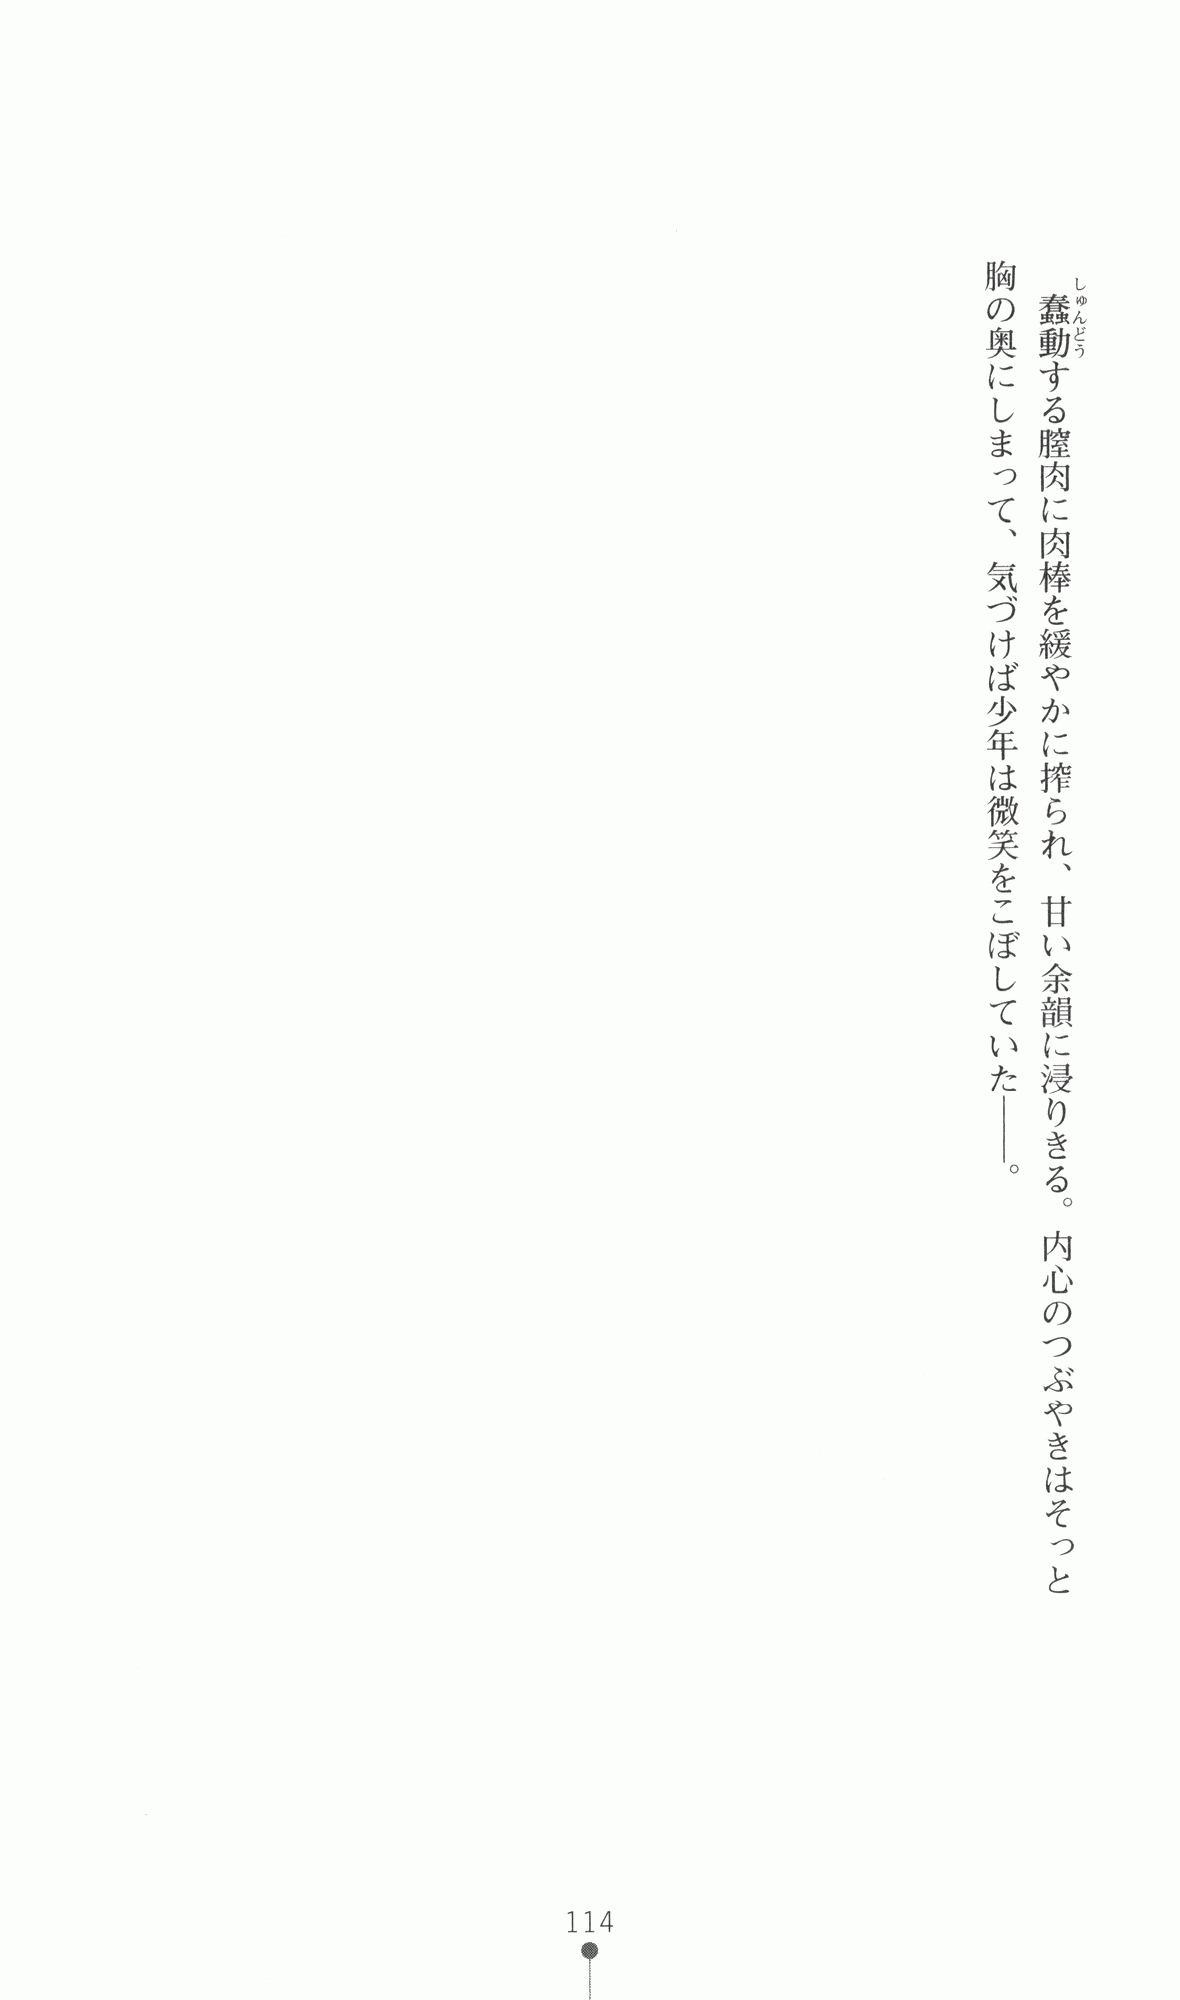 [Utsusemi × Yoshi Hyuma, Komori Kei] Princess Lover! Sylvia van Hossen no Koiji 2 (Original by Ricotta) 137